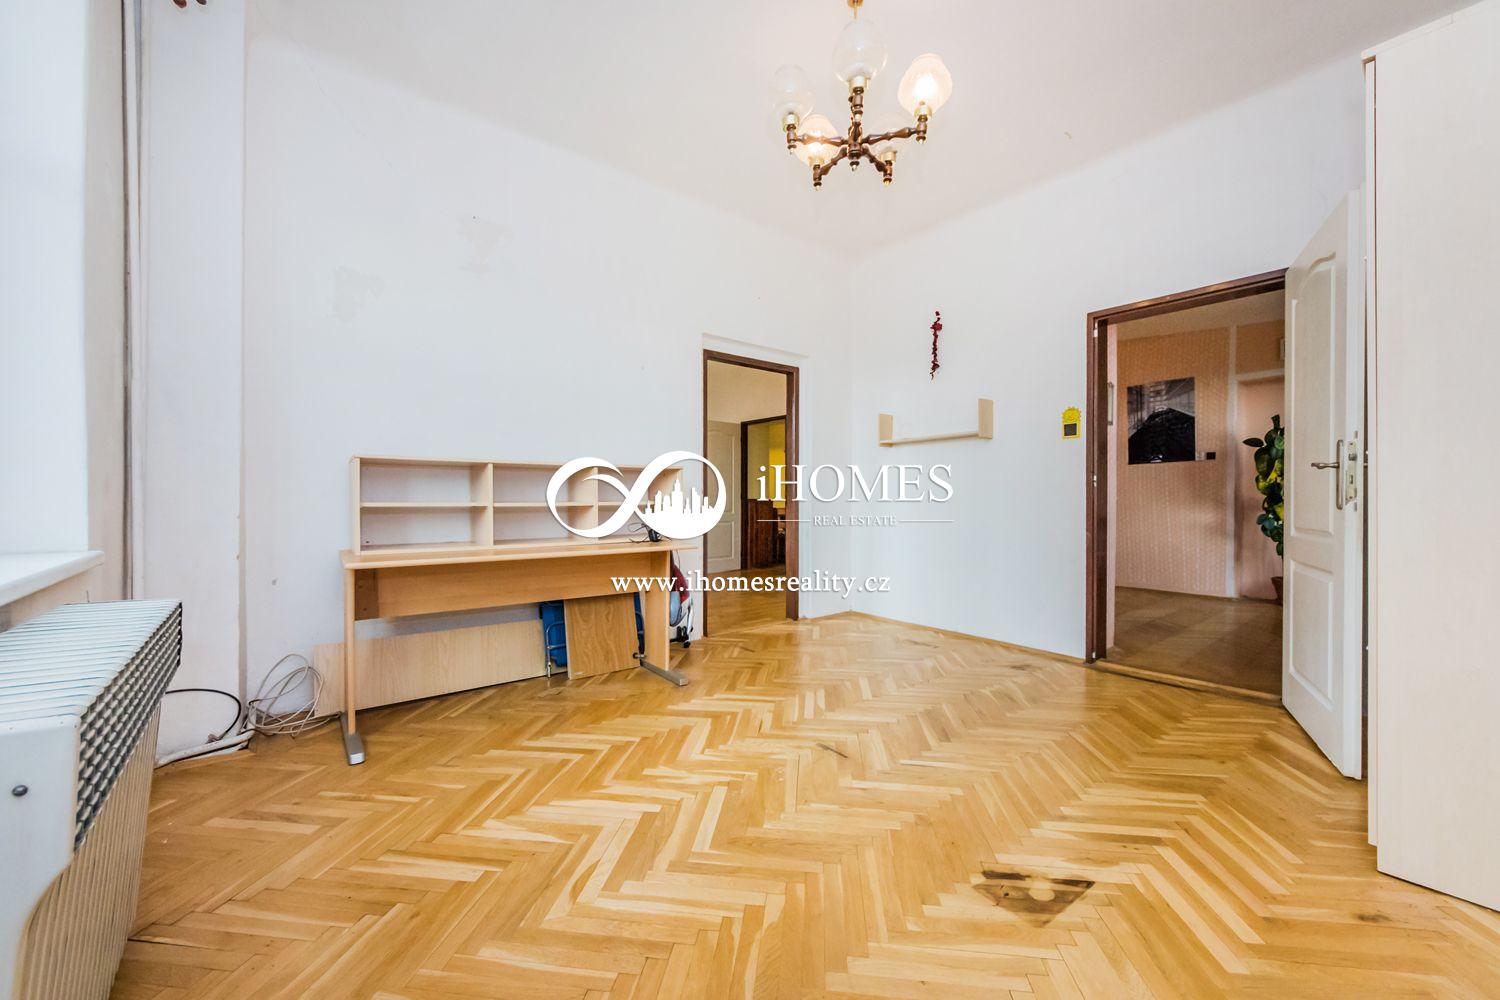 Na prodej ČD 19 bytu a kancelař 1200m2 bytové plochy pozemek 600 m2 Praha 7 Holešovice.